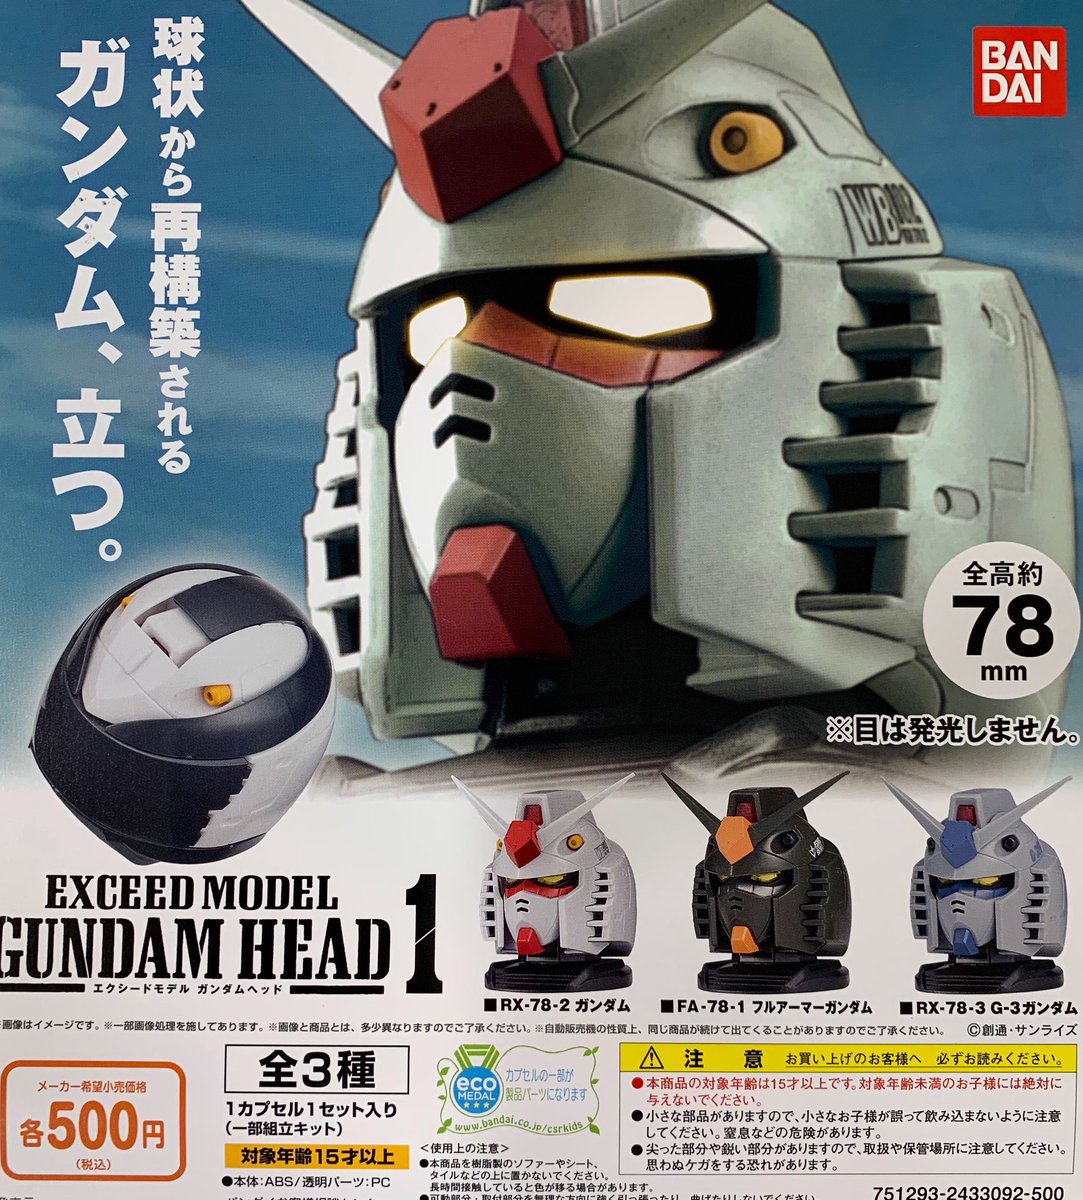 ガチャりば Okinawa در توییتر 入荷情報 Exceed Model Gundam Head 1 僕のヒーローアカデミア にとたんフィギュアマスコット ディズニーキャラクター ねぼすけフィギュアコレクション ガンダム Gundam 僕のヒーローアカデミア ヒロアカ ディズニー